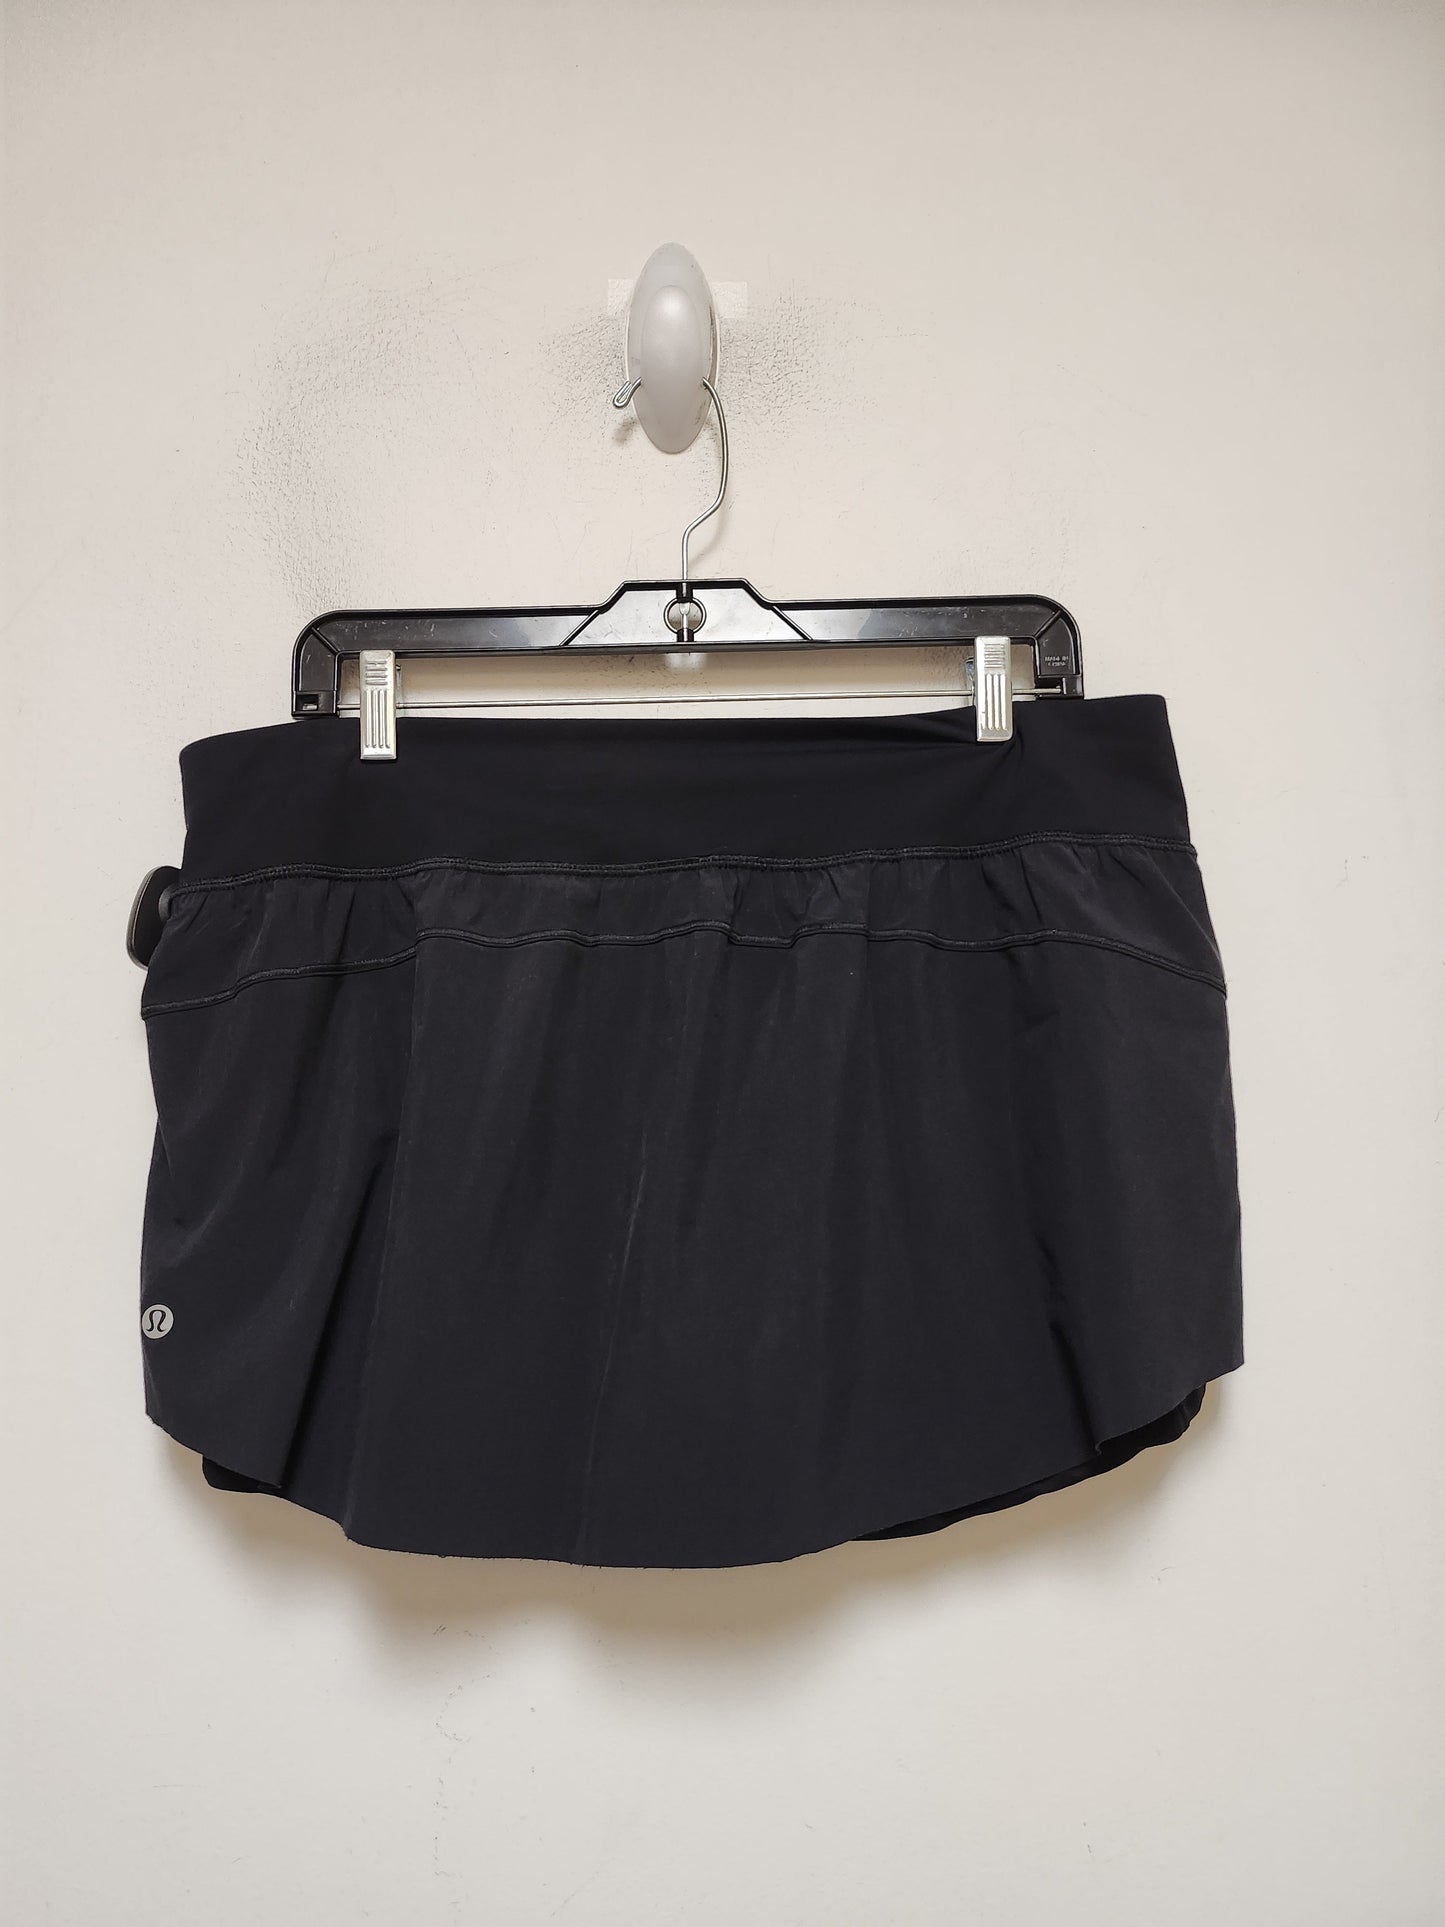 Black Athletic Shorts Lululemon, Size 12